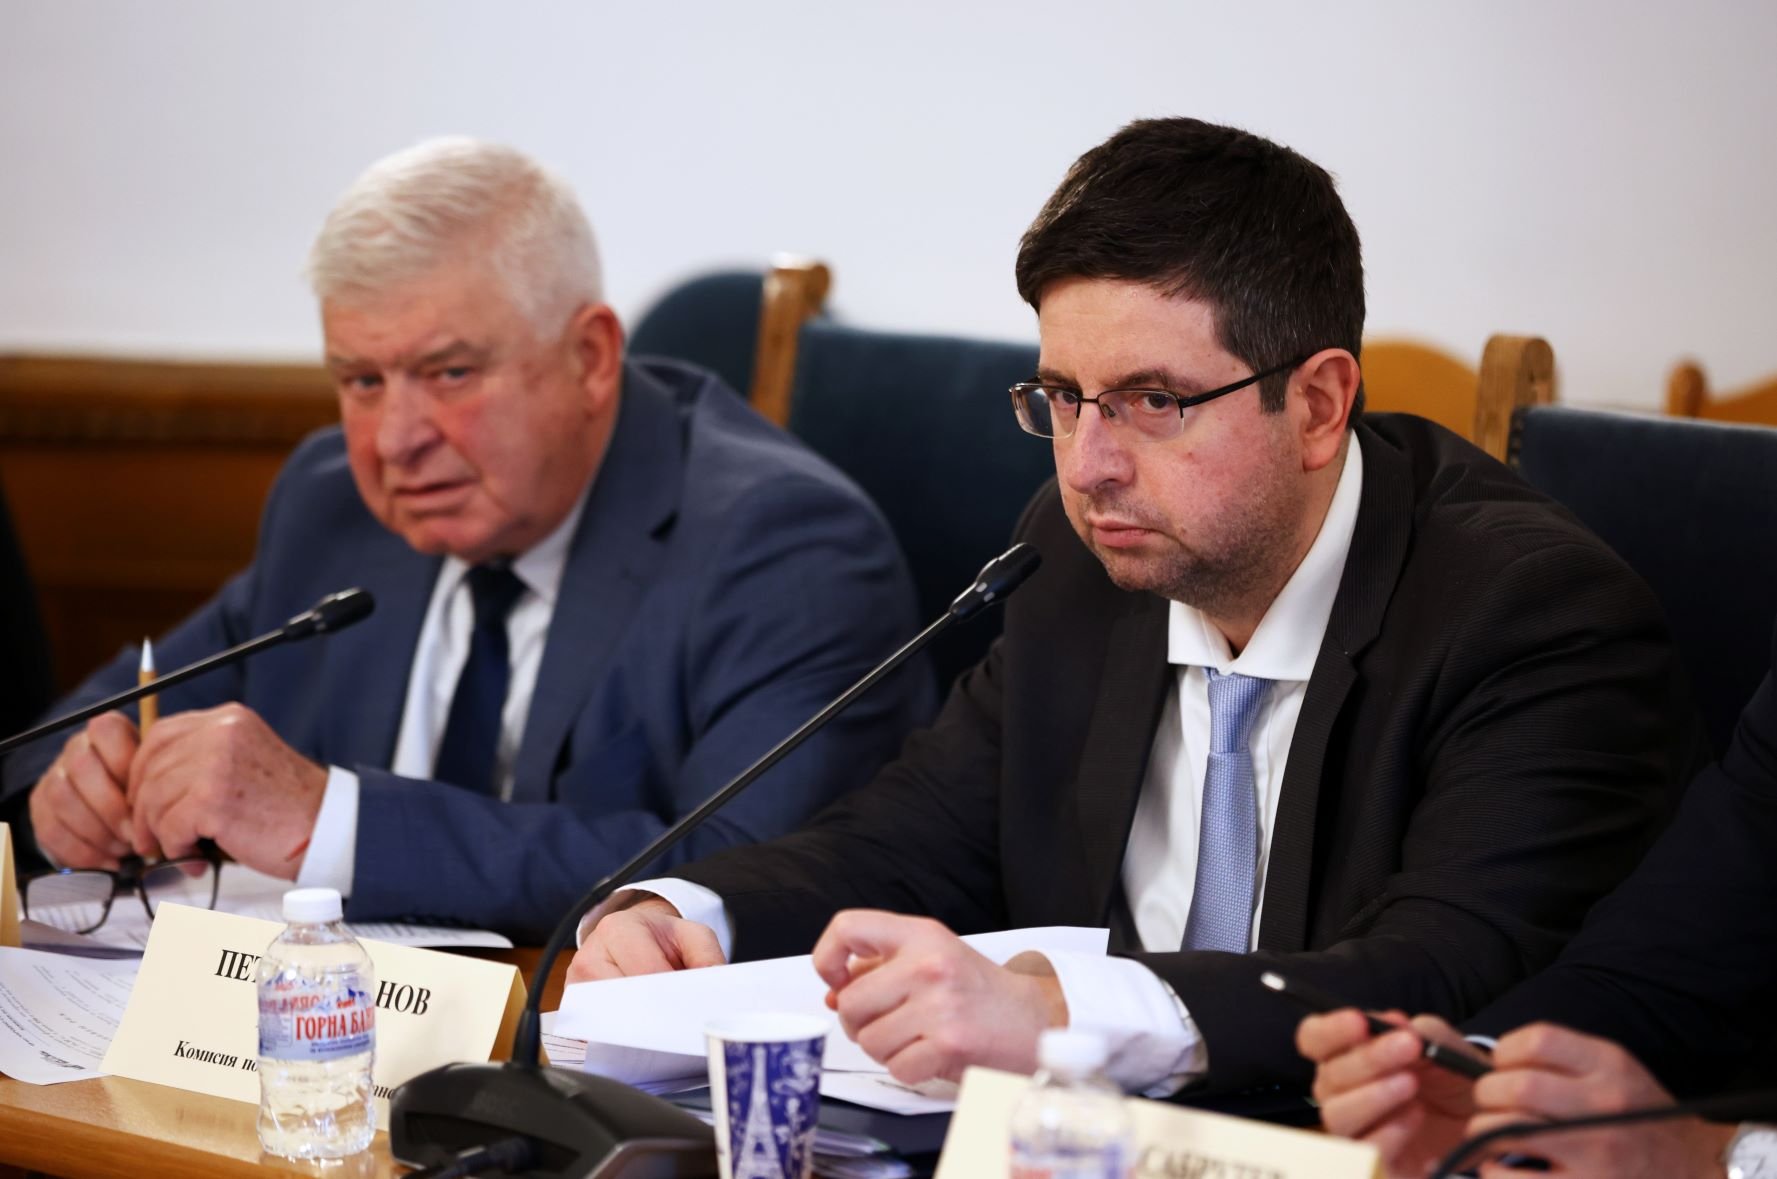 Кирил Ананиев (ГЕРБ) и Петър Чобанов (ДПС) - председател на Комисията за бюджет и финанси по време на заседанието